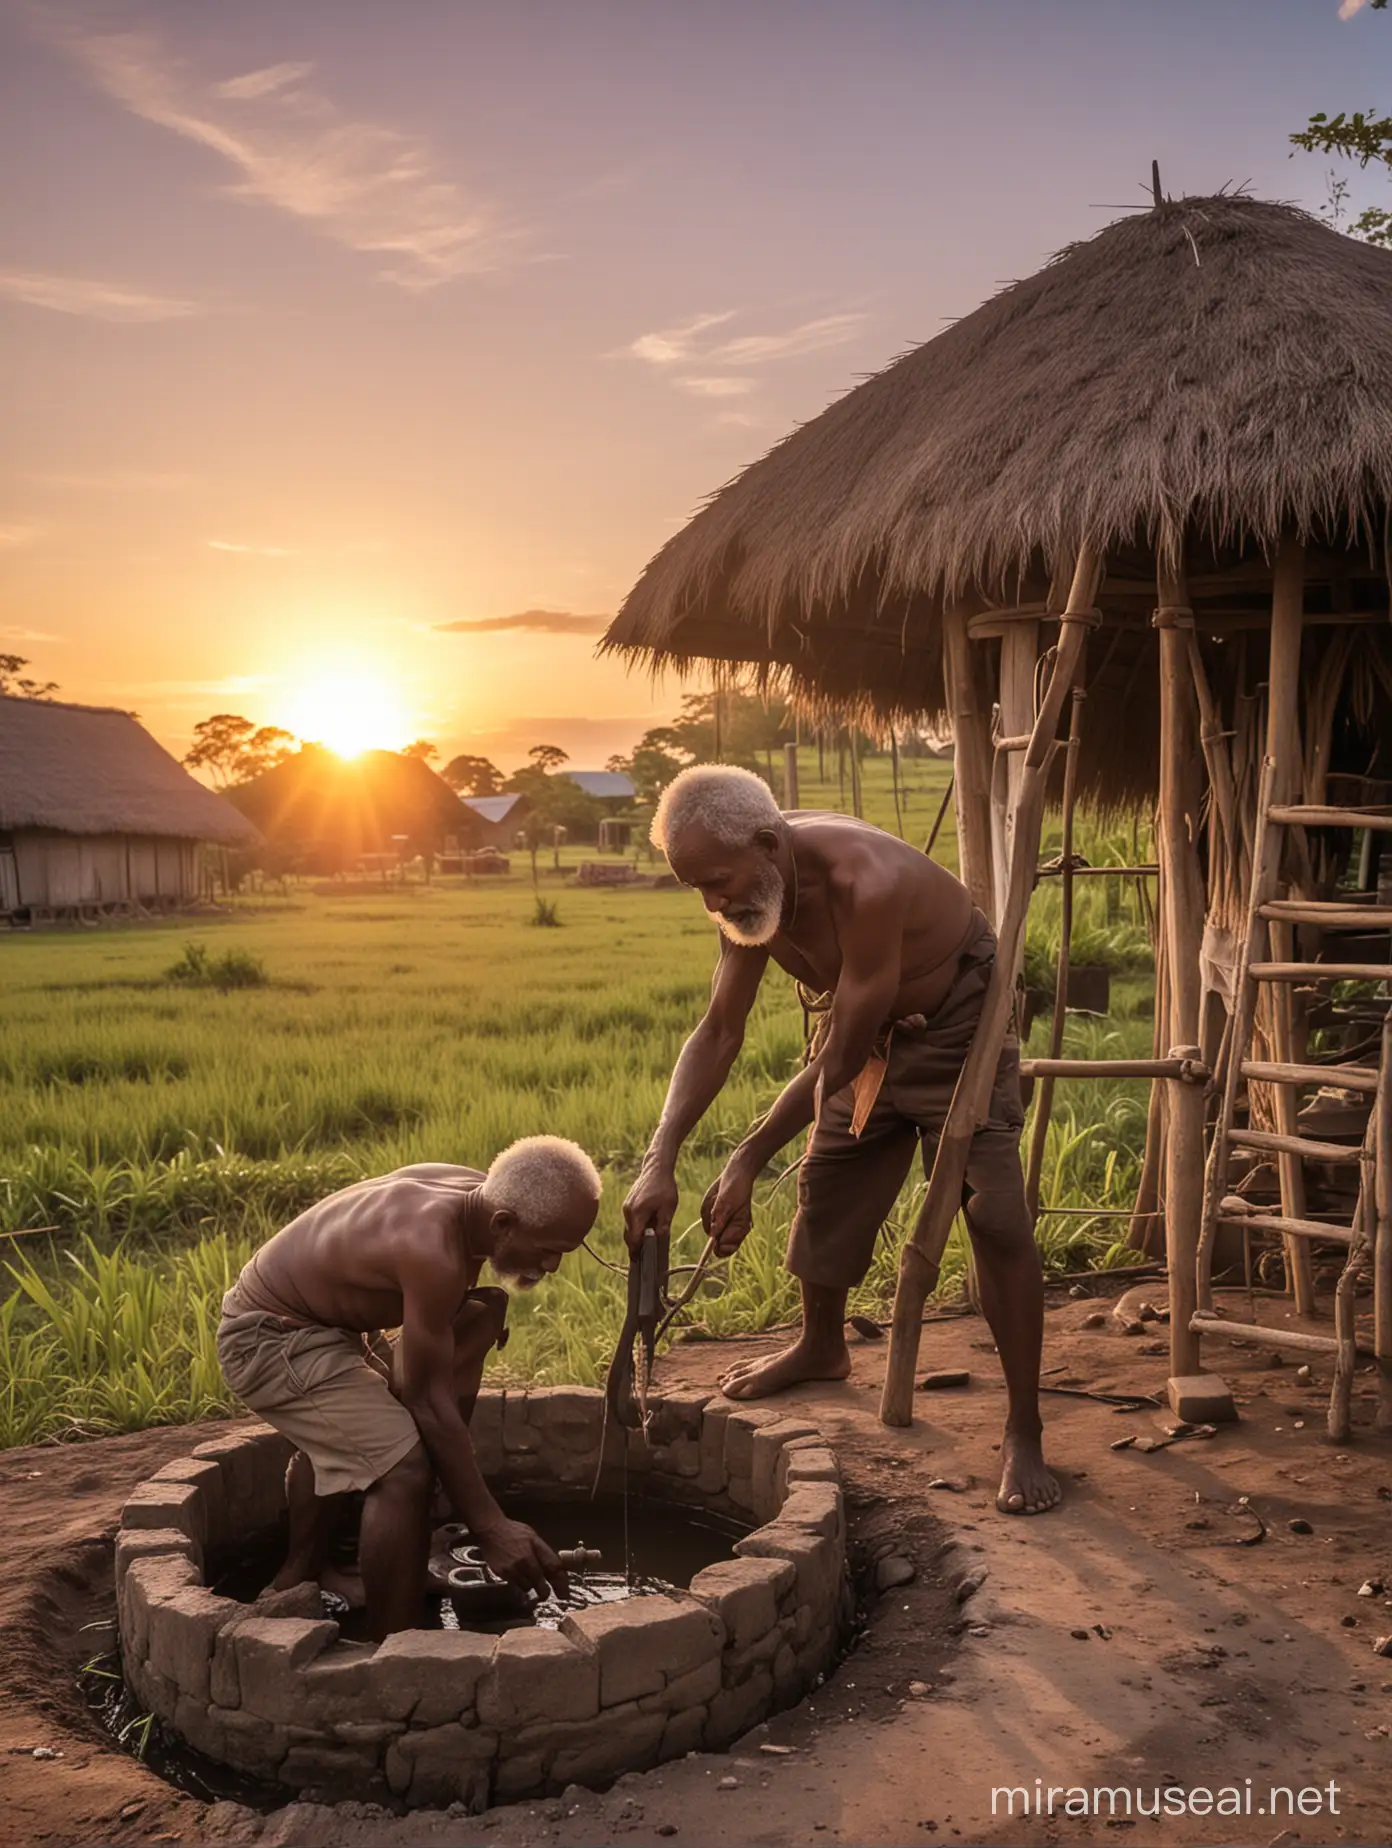 seorang kakek dari papua sedang memperbaiki sumur bor di sebuah desa yang indah pada saat sunset